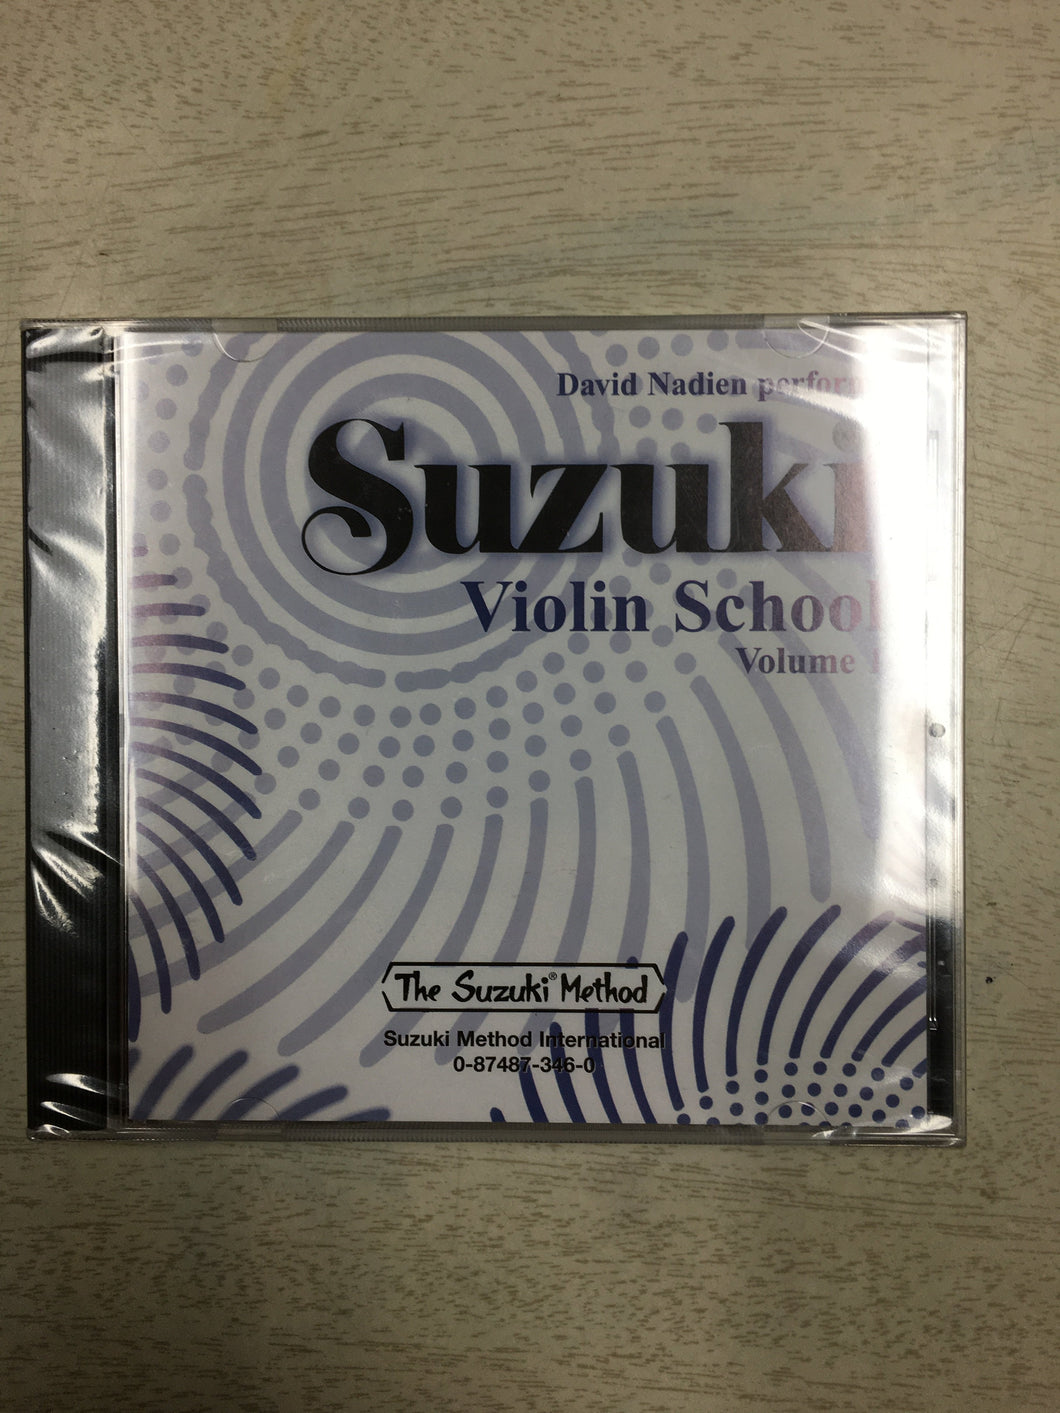 Suzuki Violin School, Volume 1 CD Performed by David Nadien